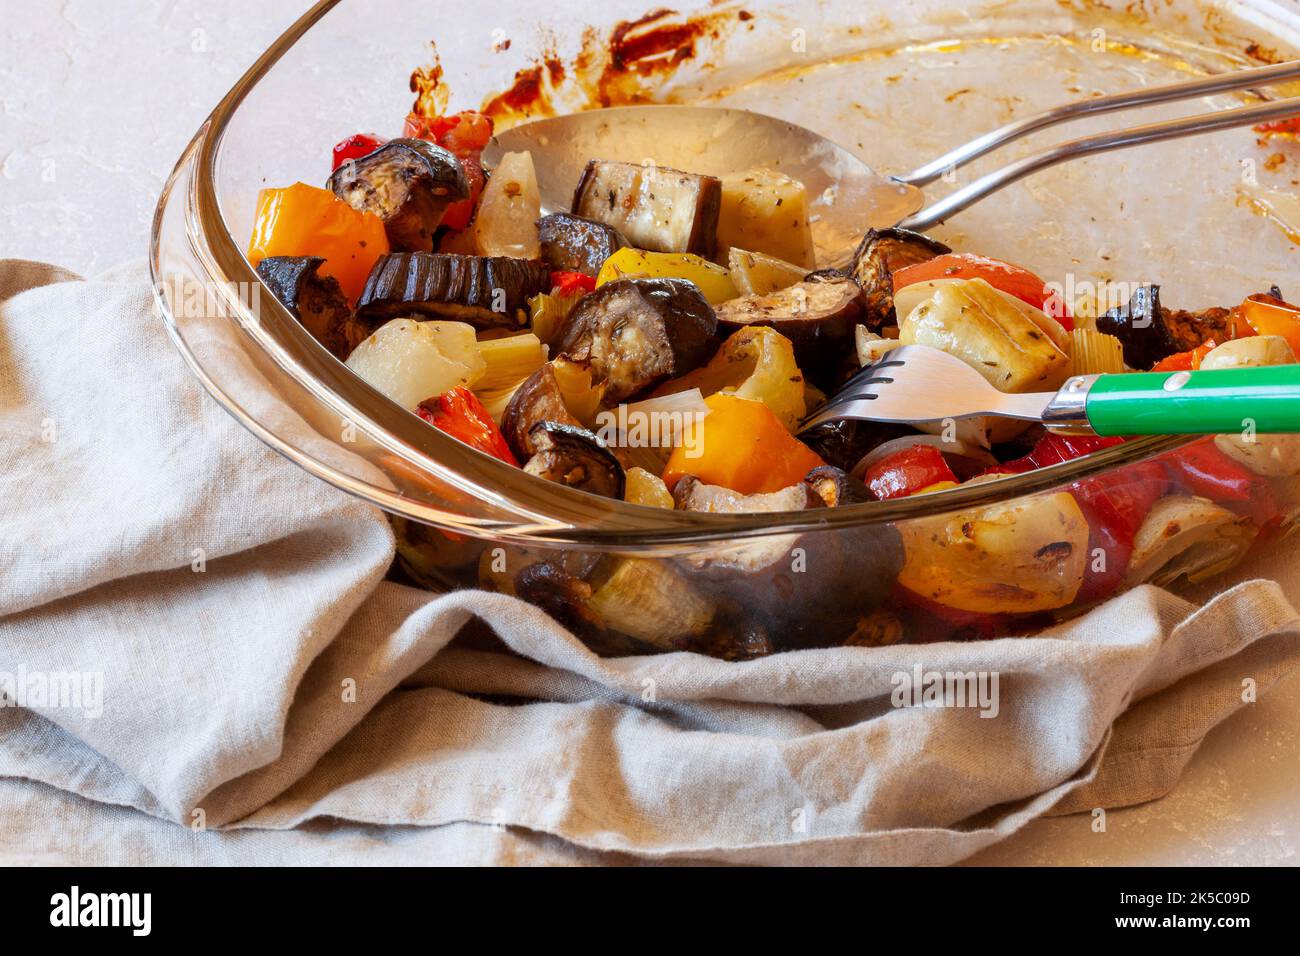 piatto da forno con verdure al forno, dimensione famiglia, metà mangiato, vista laterale Foto Stock